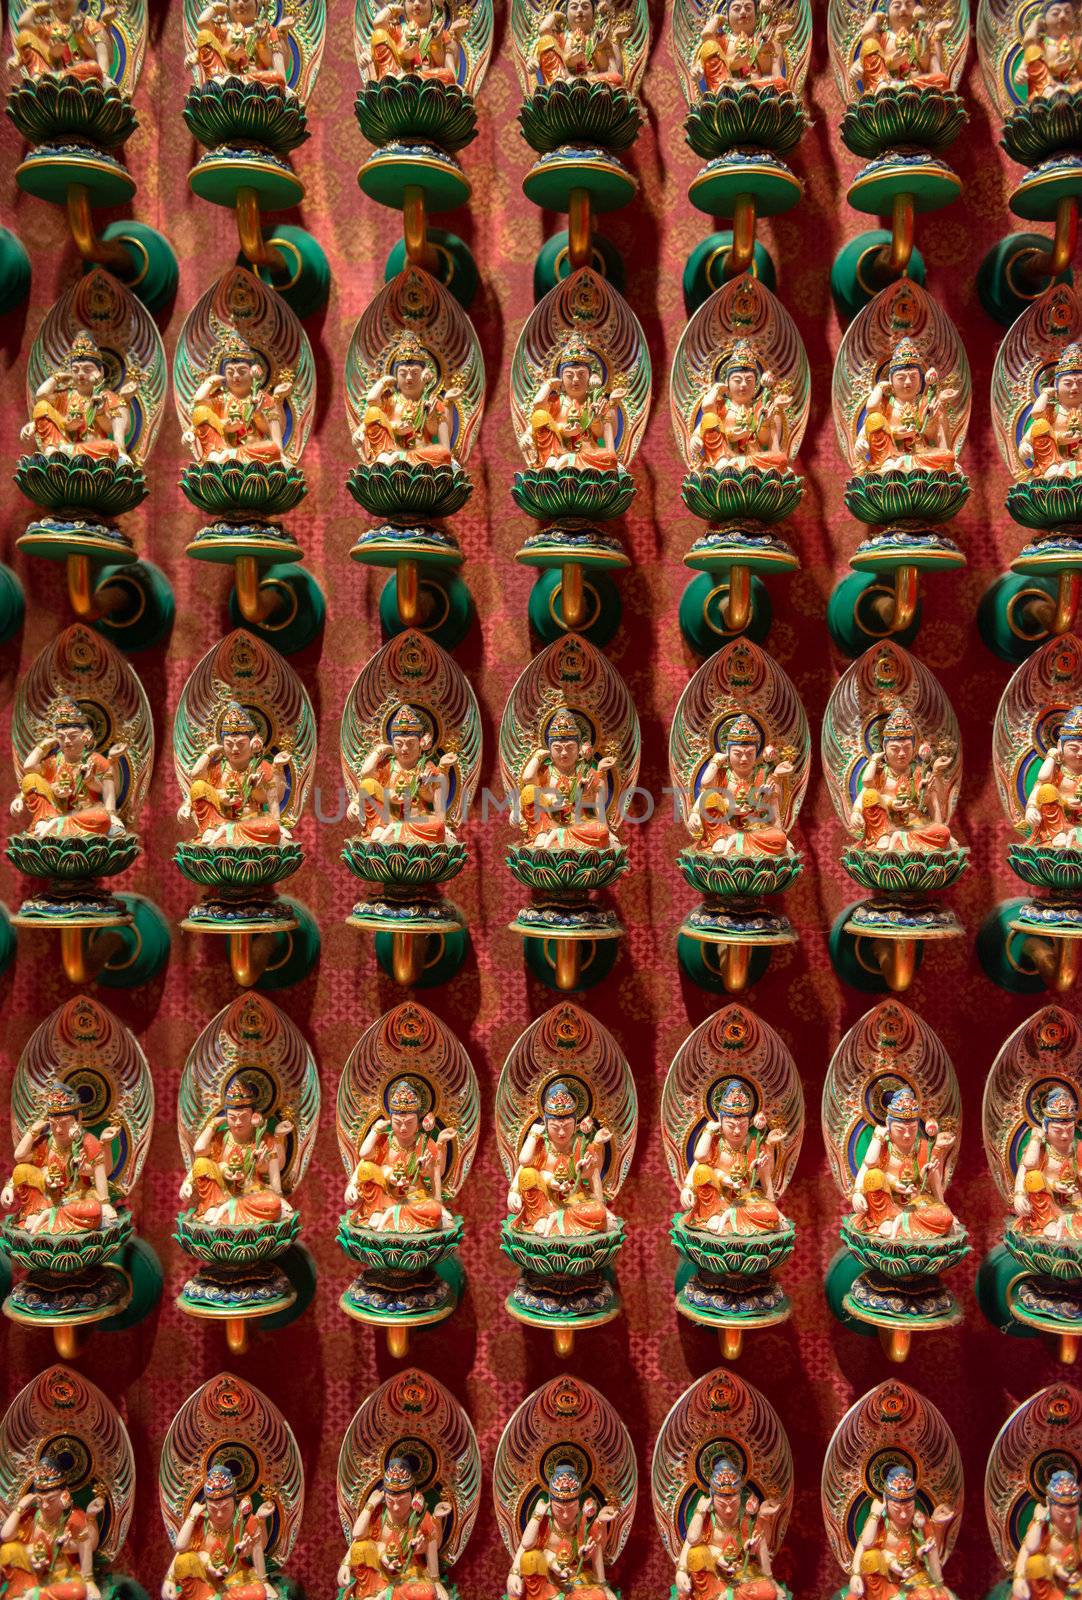 Many Buddhist statues on lotus flowers by iryna_rasko